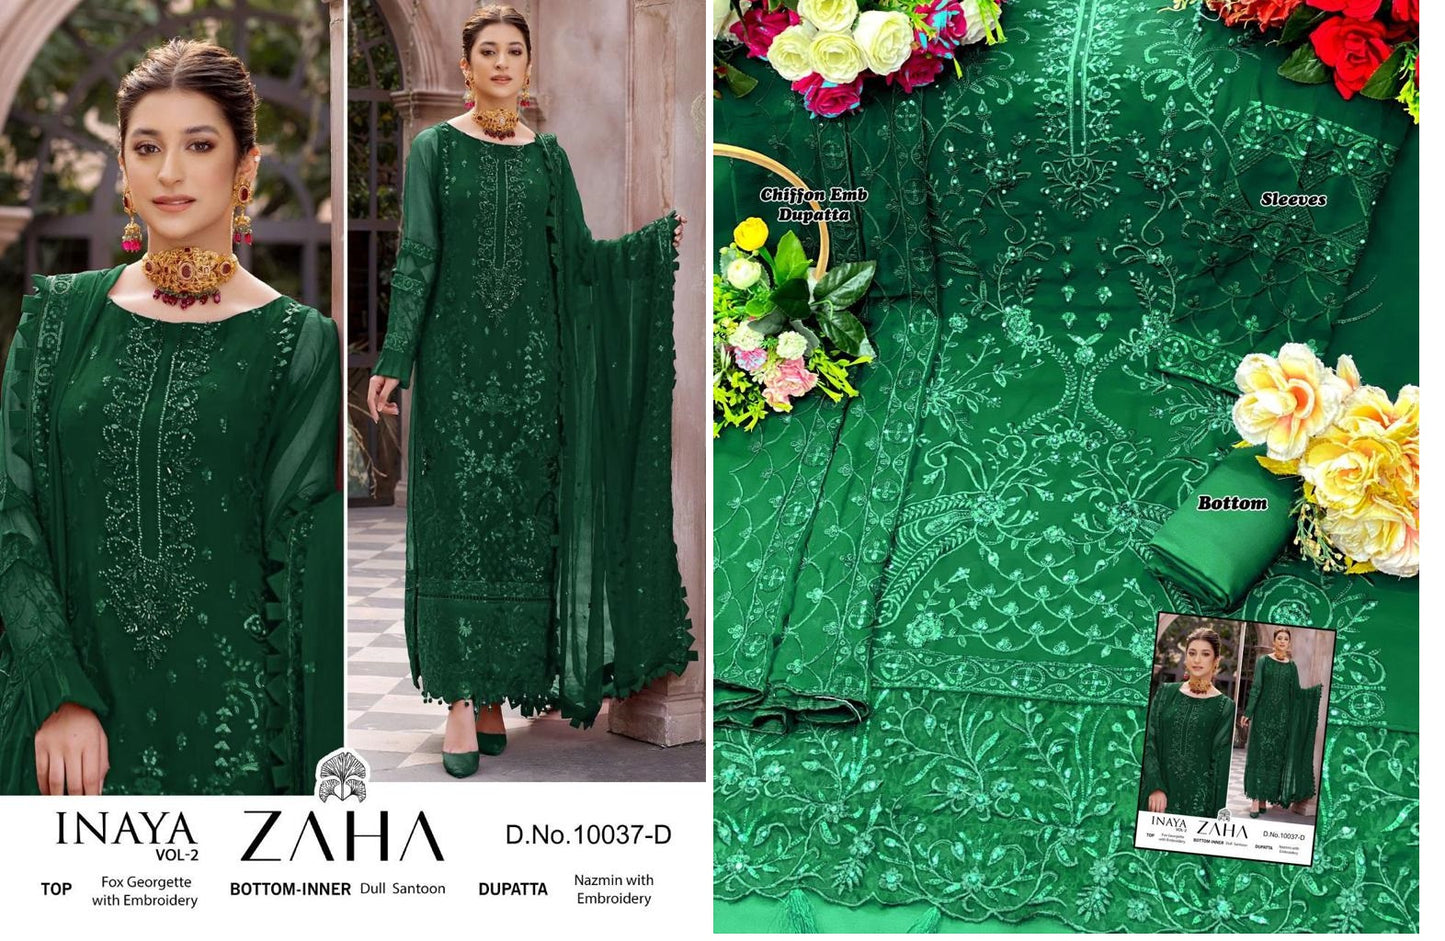 10037-Inaya Vol 2 Zaha Georgette Pakistani Salwar Suits